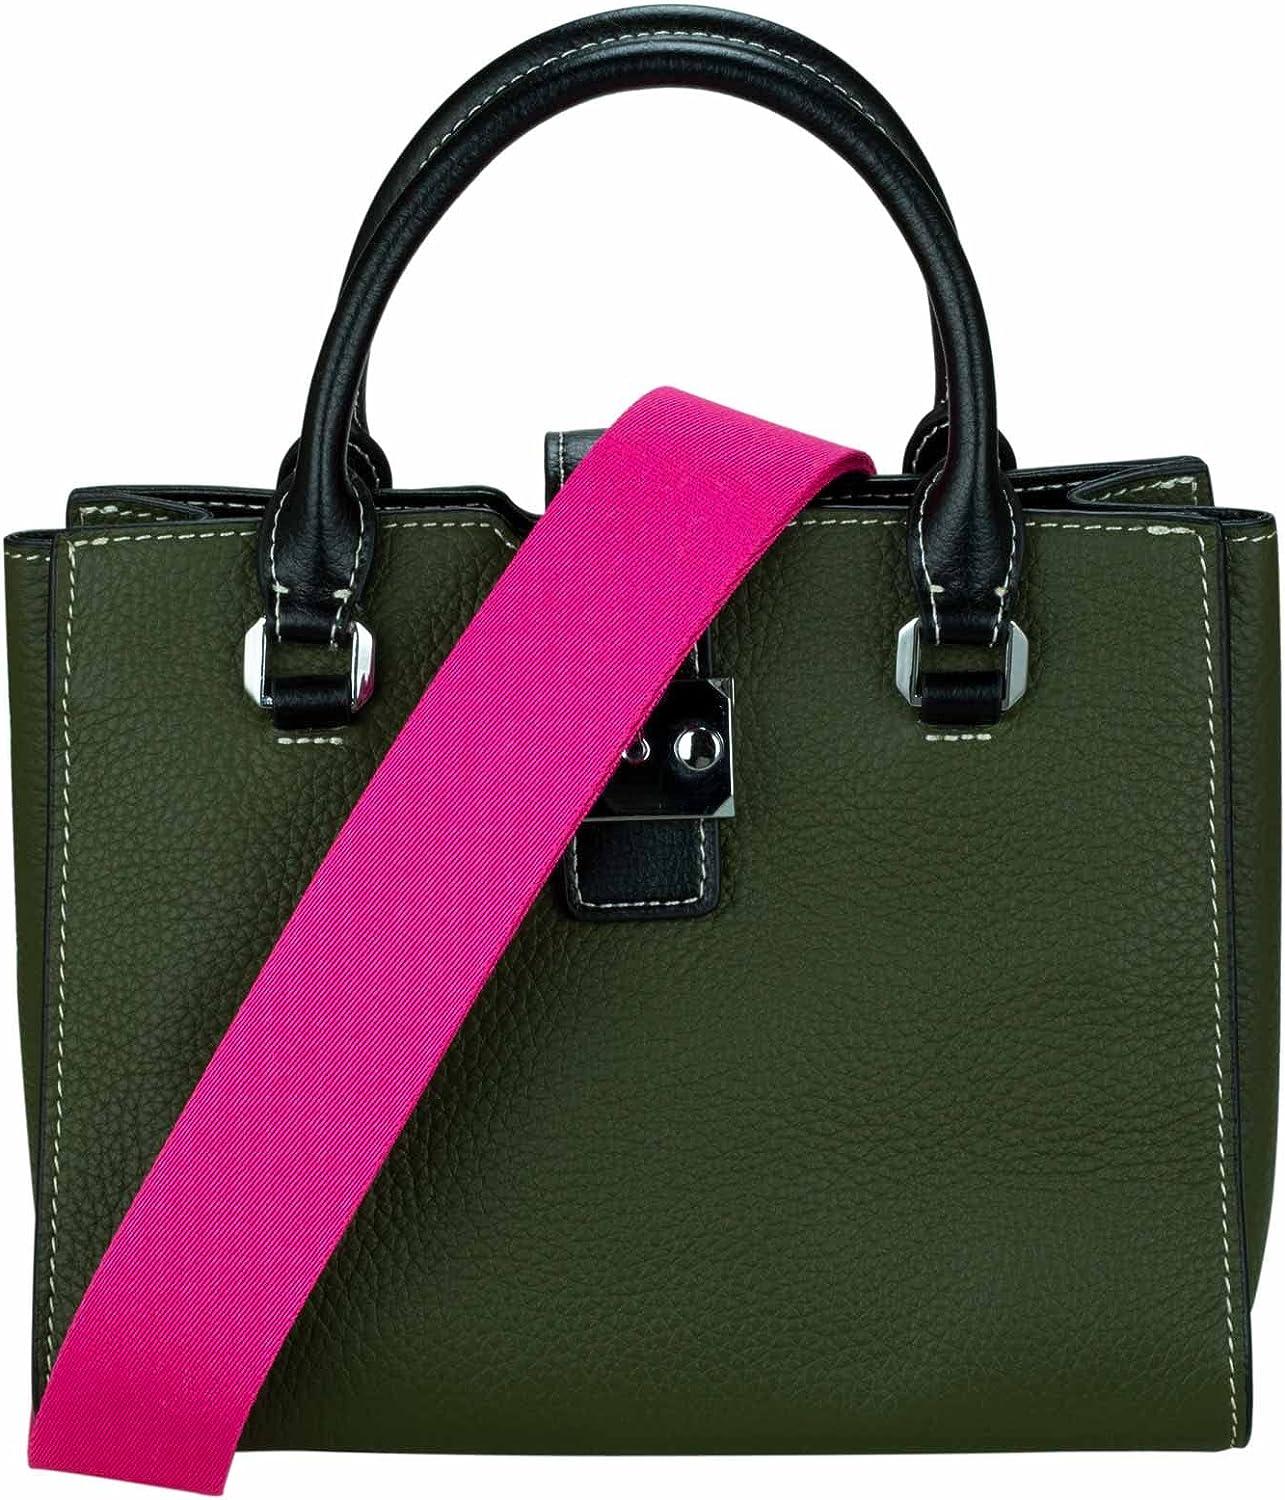 Hot Pink Adjustable Extender for Purse Strap, Extension Bag Strap